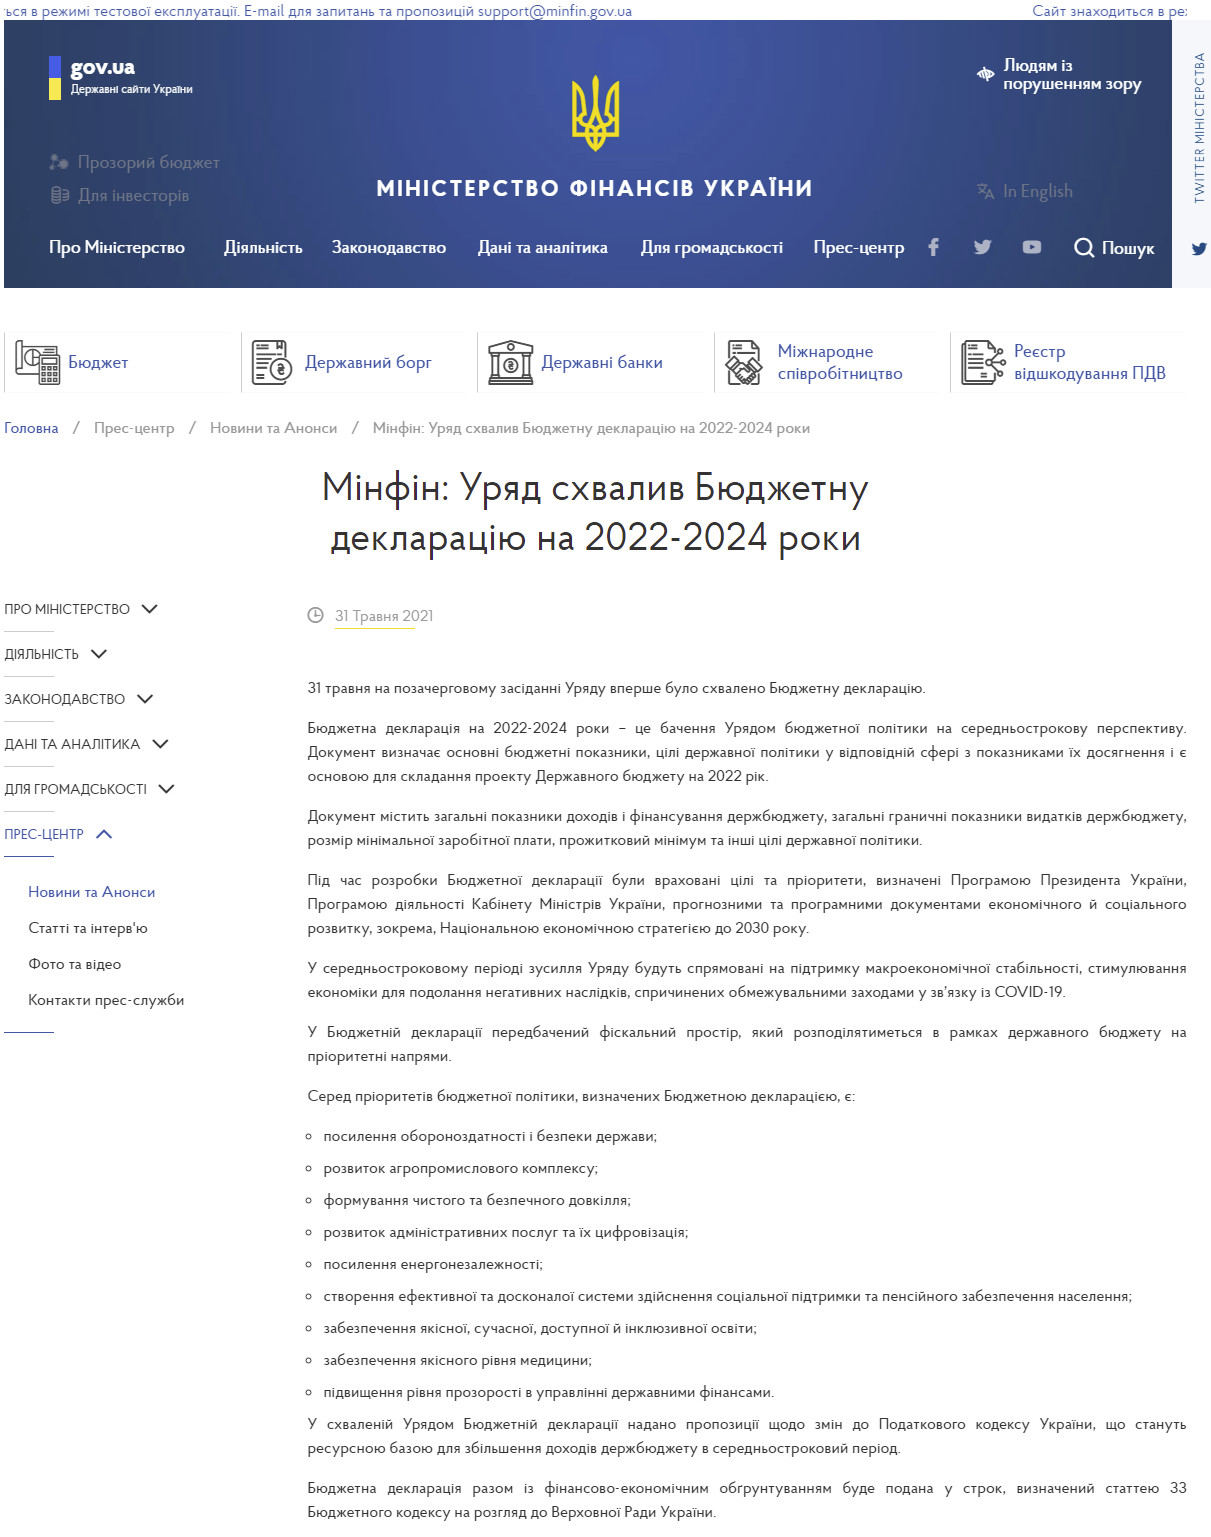 https://mof.gov.ua/uk/news/minfin_uriad_skhvaliv_biudzhetnu_deklaratsiiu_na_2022-2024_roki-2899